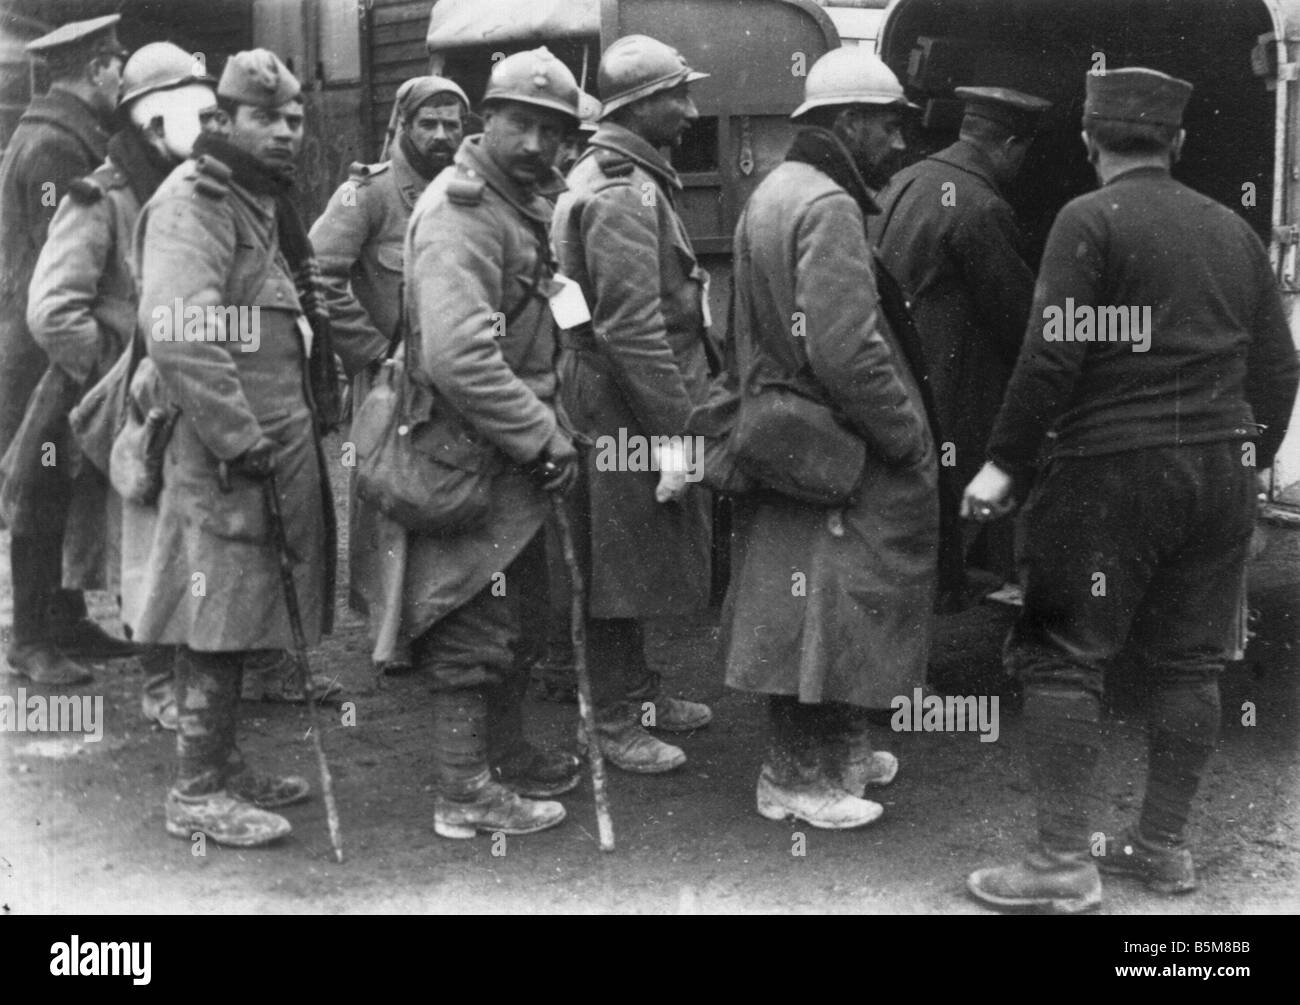 2 G55 F1 1915 7 französische Truppen an Bord einen Krankenwagen 1915 Geschichte Weltkrieg Frankreich Wounded französische Soldaten Aufstieg auf einen Krankenwagen Stockfoto